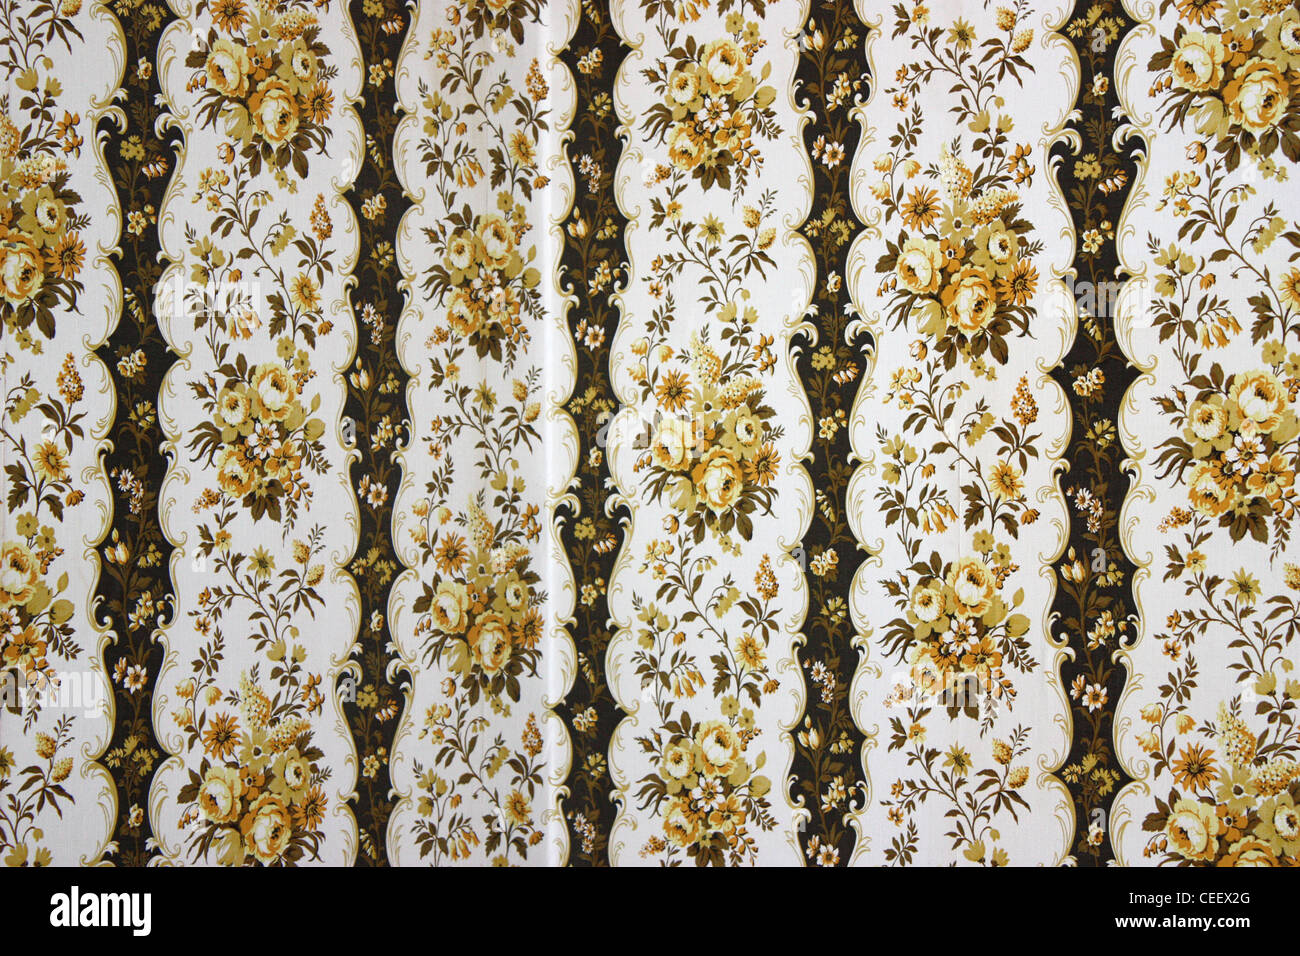 70 Papel tapiz floral Foto de stock